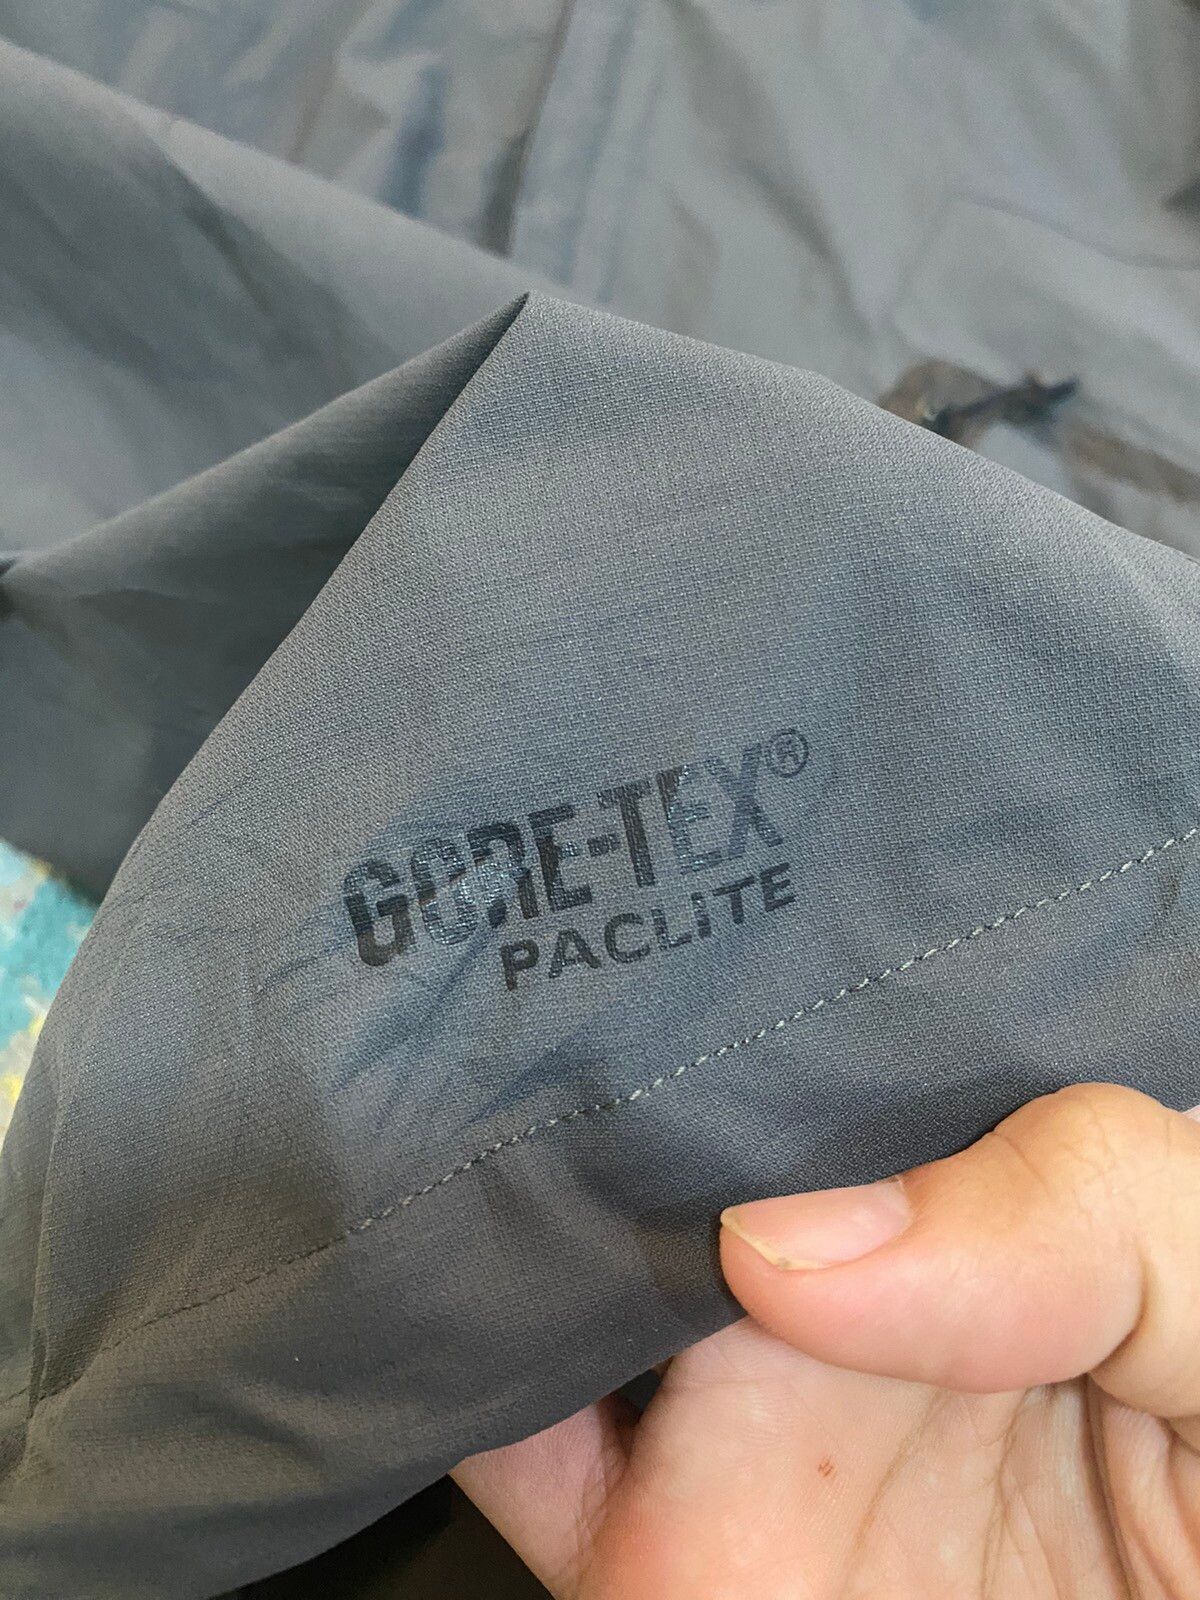 Goretex - Nike Acg Gore-tex Paclite Waterproof Jacket - 6